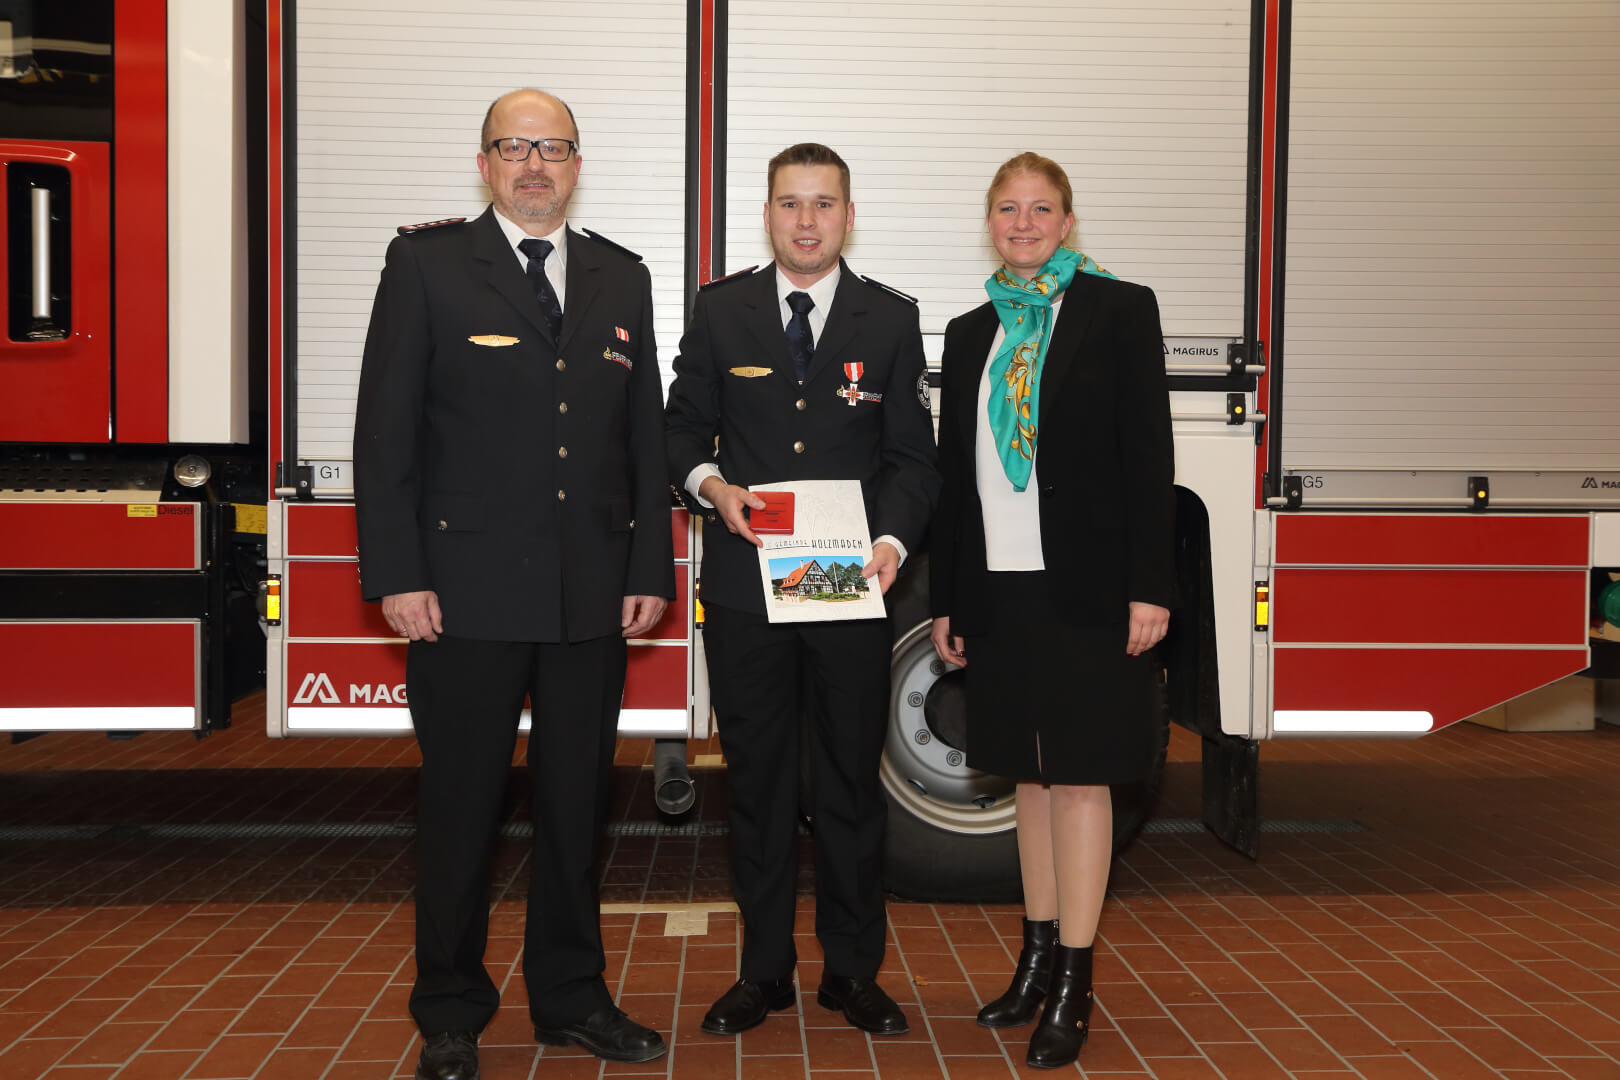 Das Feuerwehr-Ehrenzeichen des Landes Baden-Württemberg in Bronze wurde für 15 aktive Dienstjahre an Erik Wetzel verliehen.